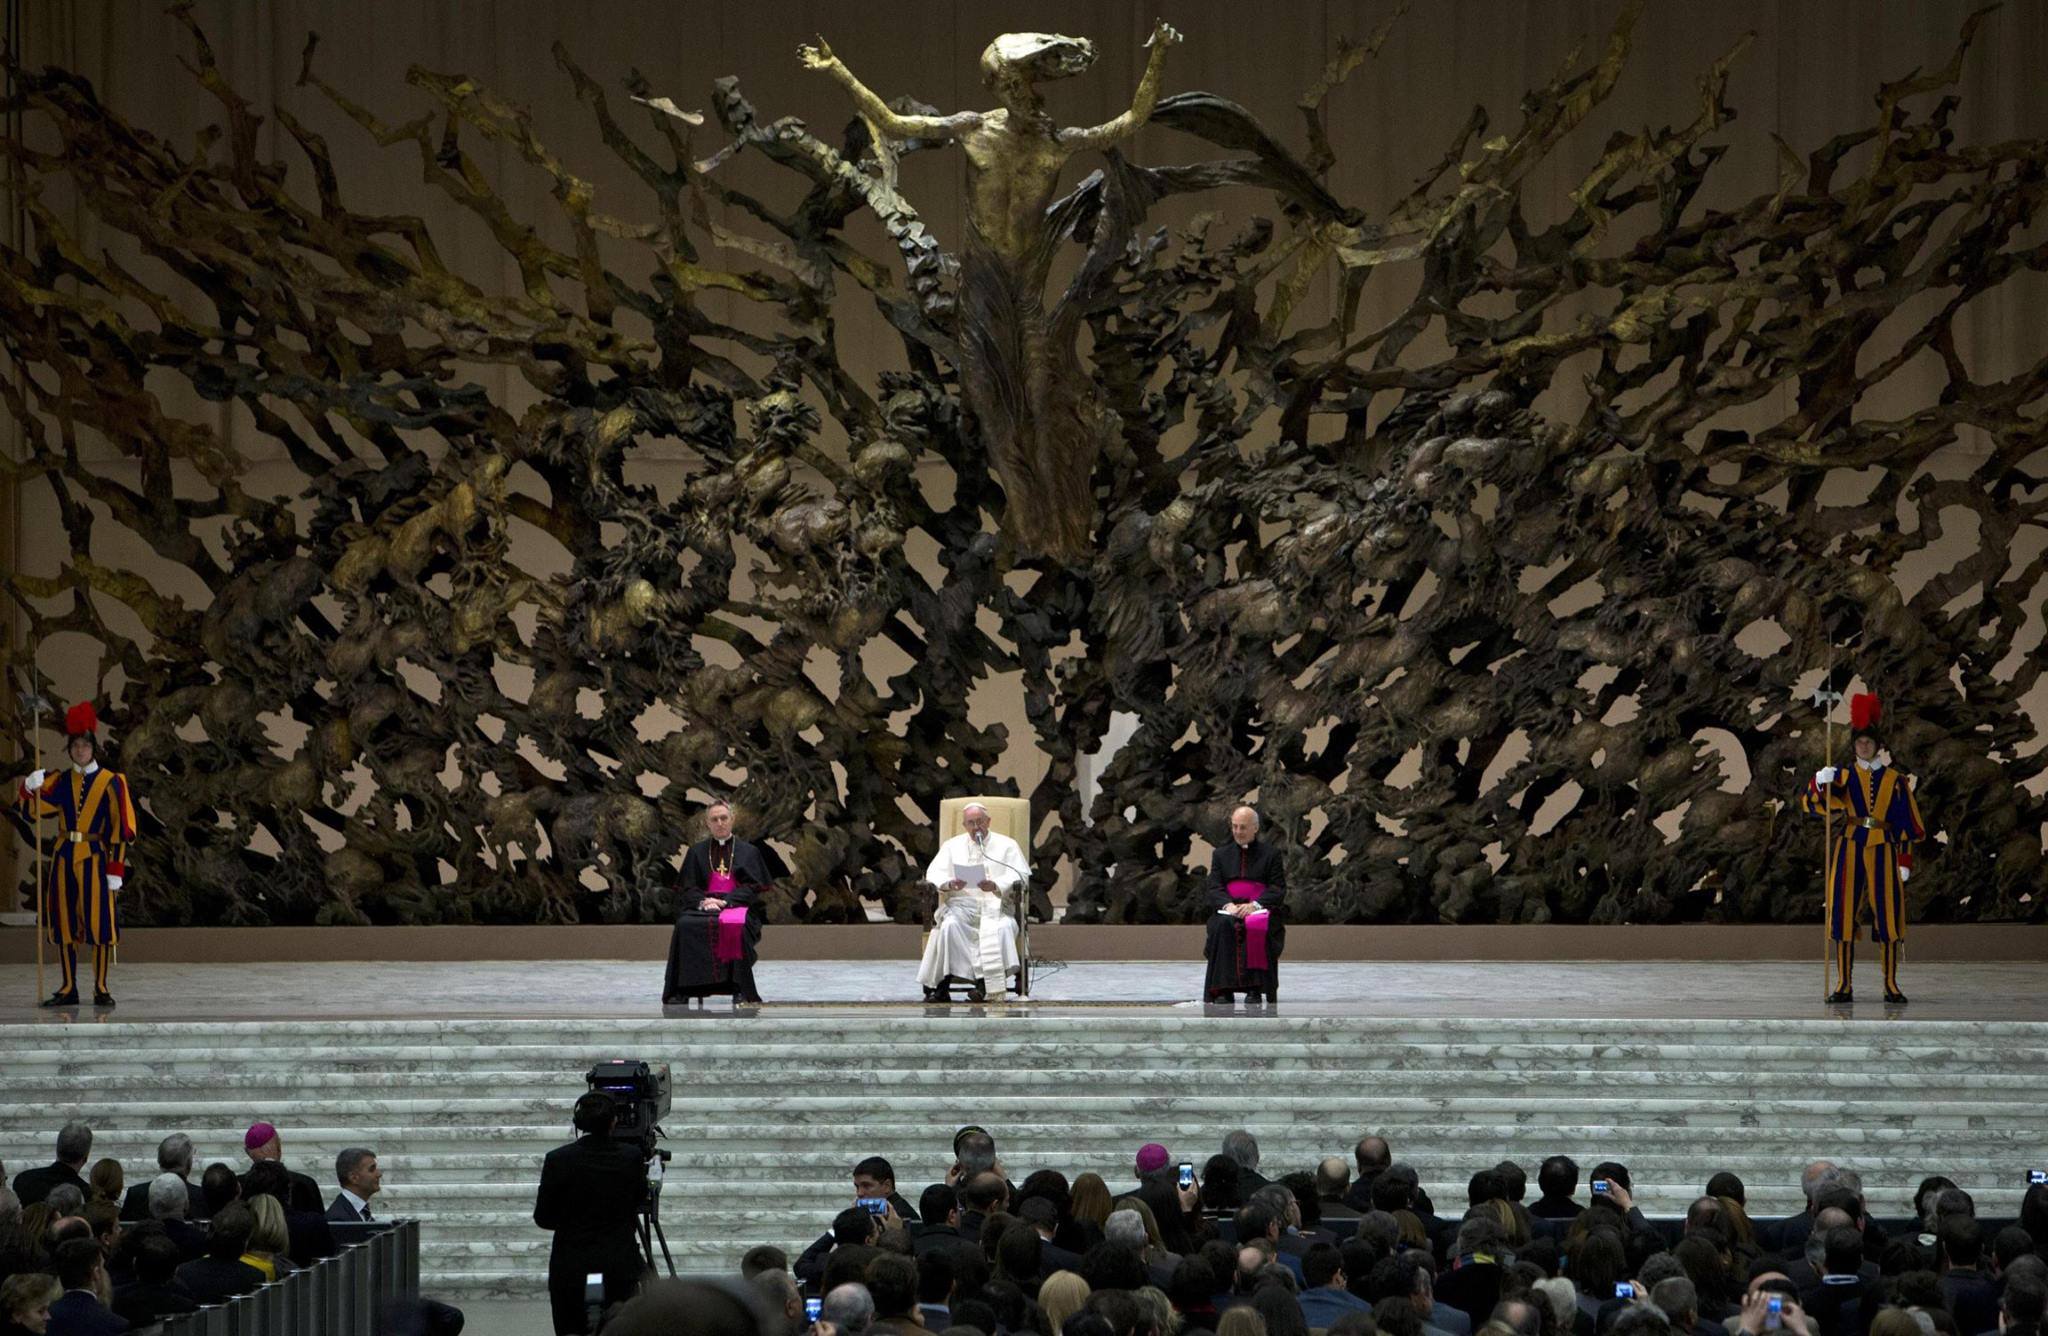 The Resurrection (La Resurrezione) is an 800-quintal (8 metric ton) bronze/copper-alloy sculpture by Pericle Fazzini in the Paul VI Audience Hall in Rome.